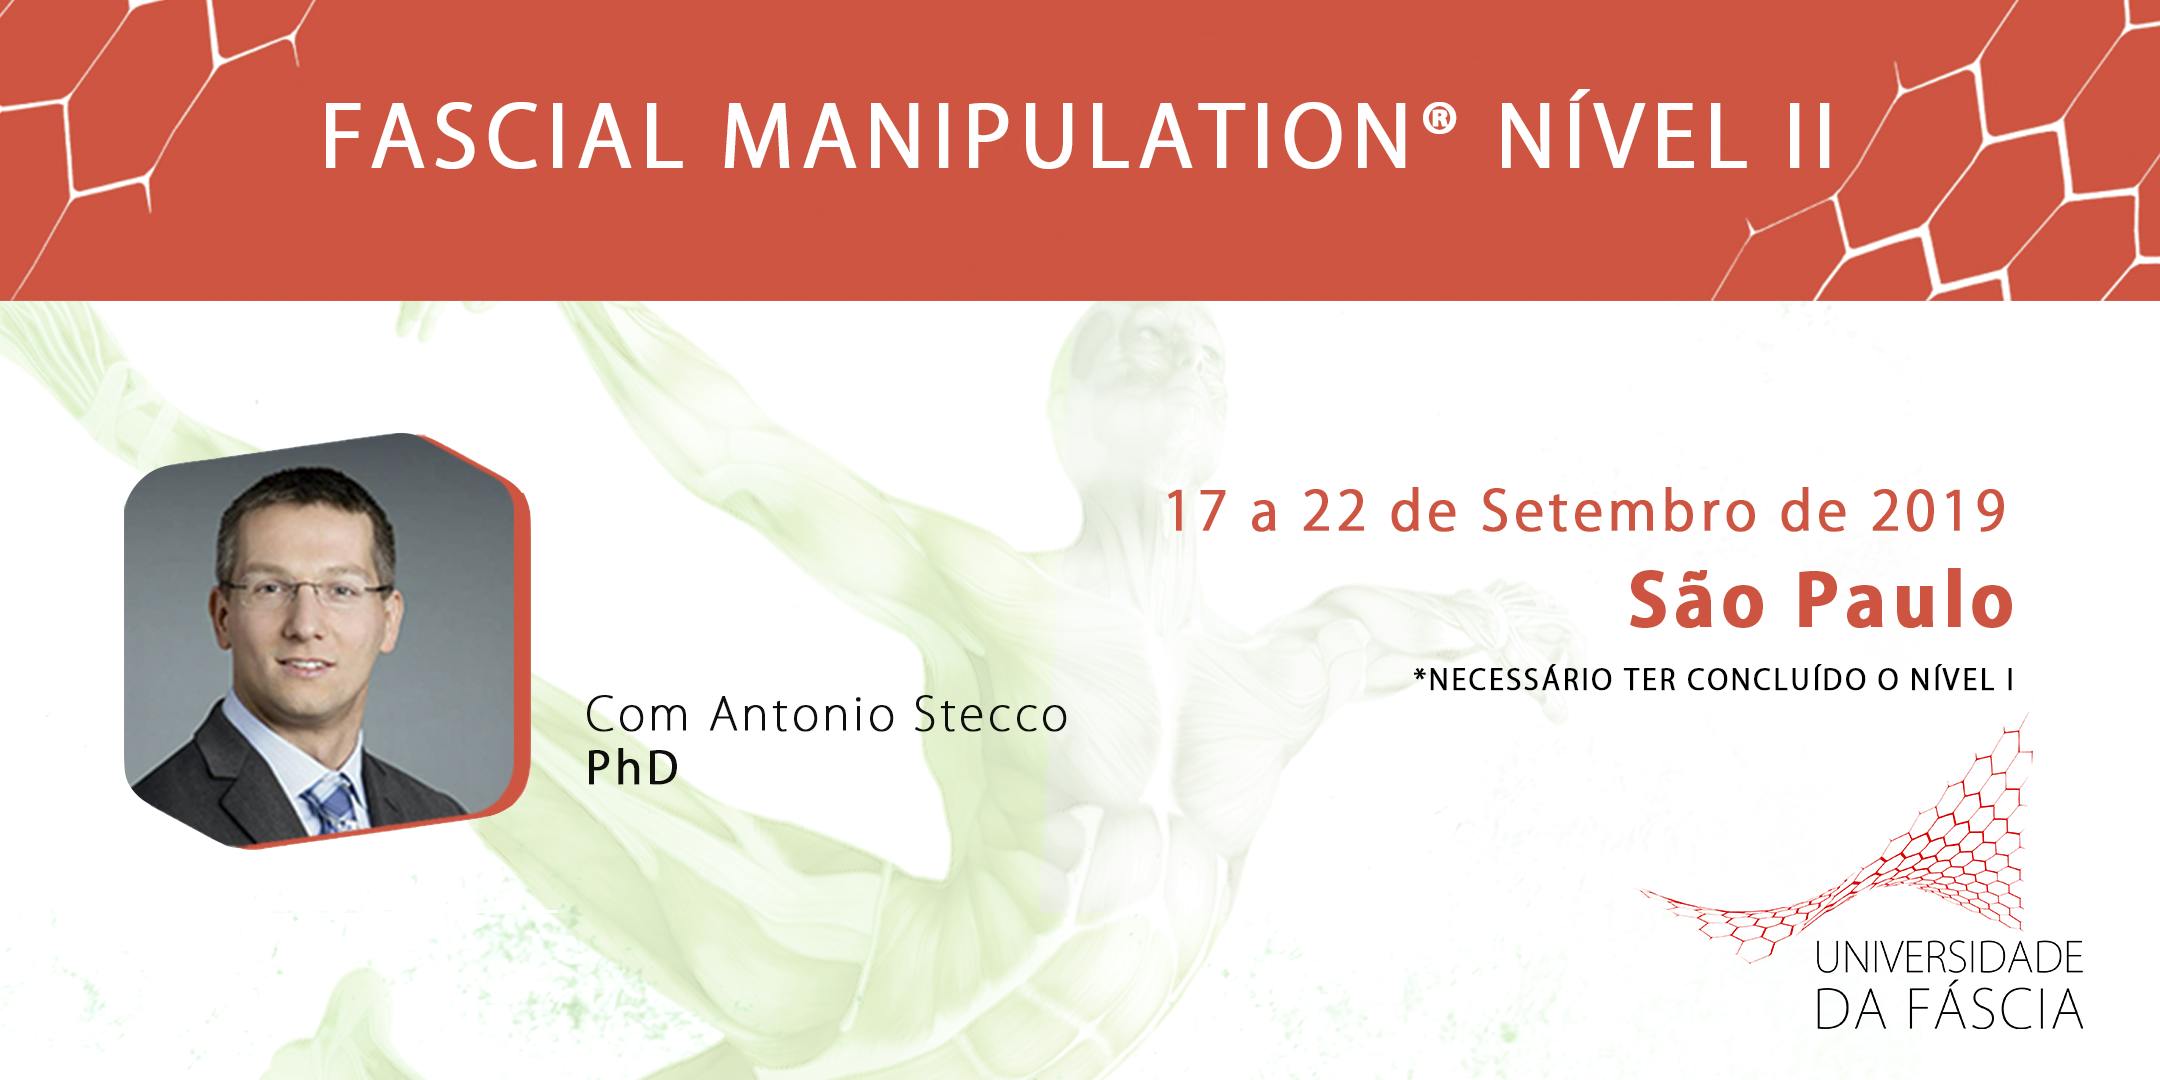 Fascial Manipulation® com Antonio Stecco - NÍVEL II